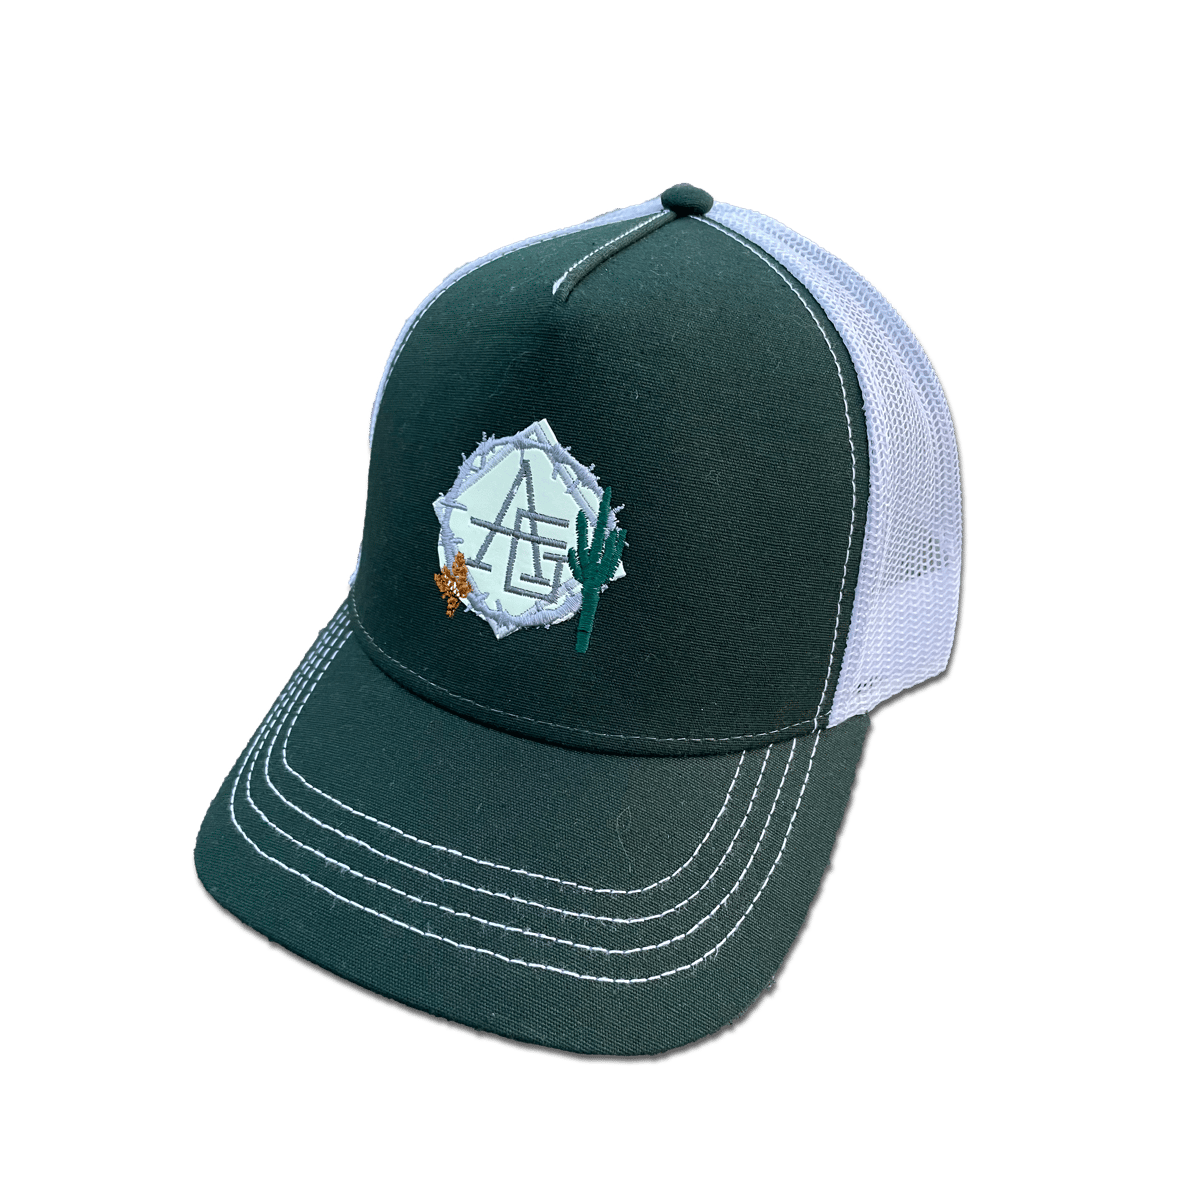 Image of Glow in the dark green bottle cactus trucker hat